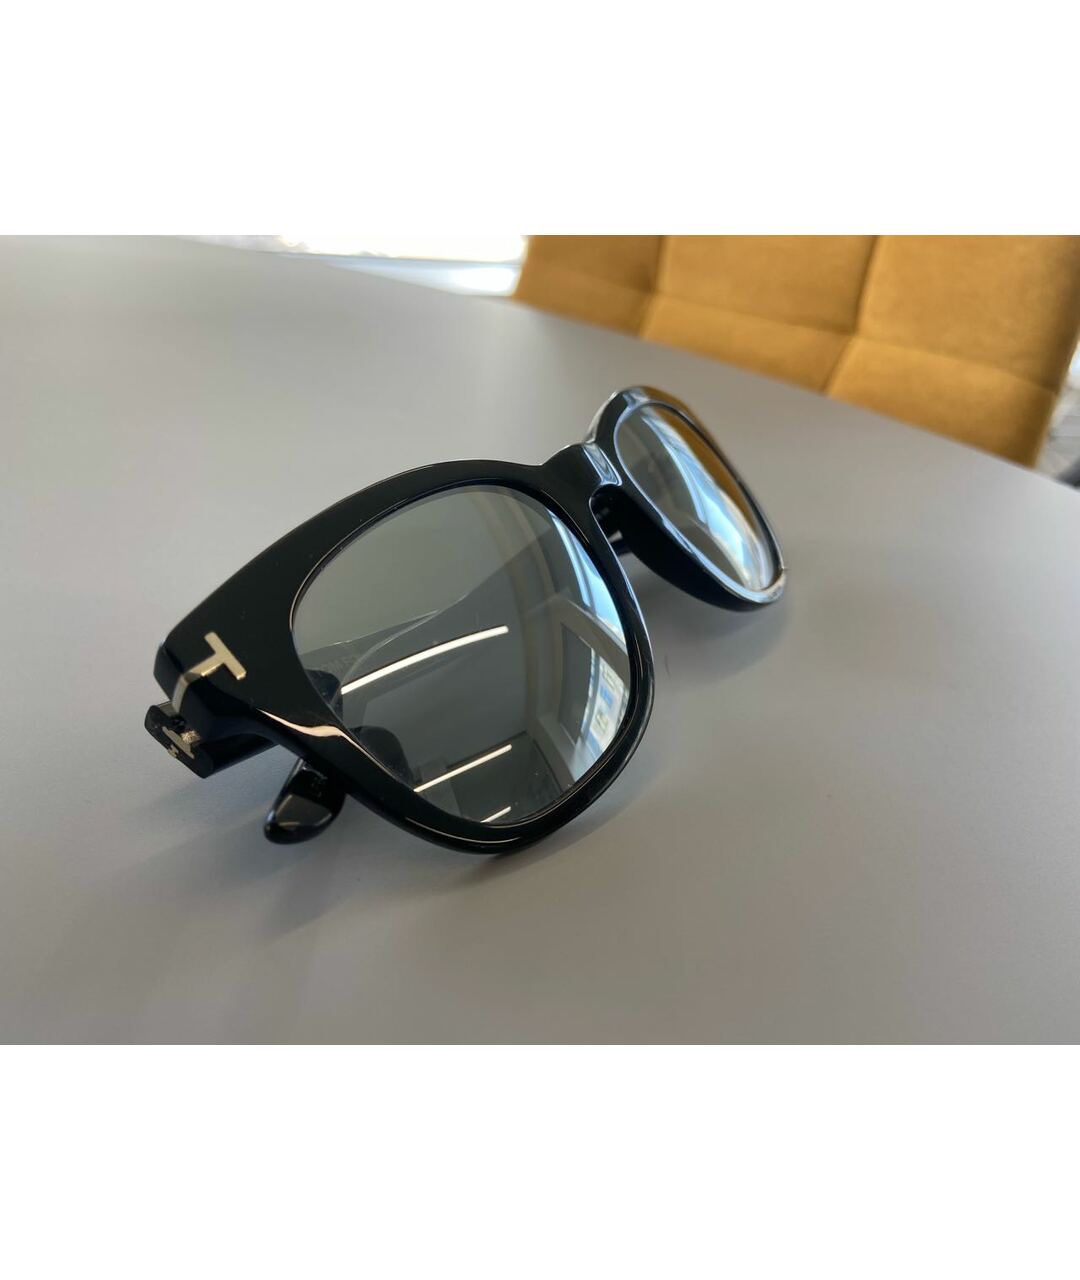 TOM FORD Черные пластиковые солнцезащитные очки, фото 2